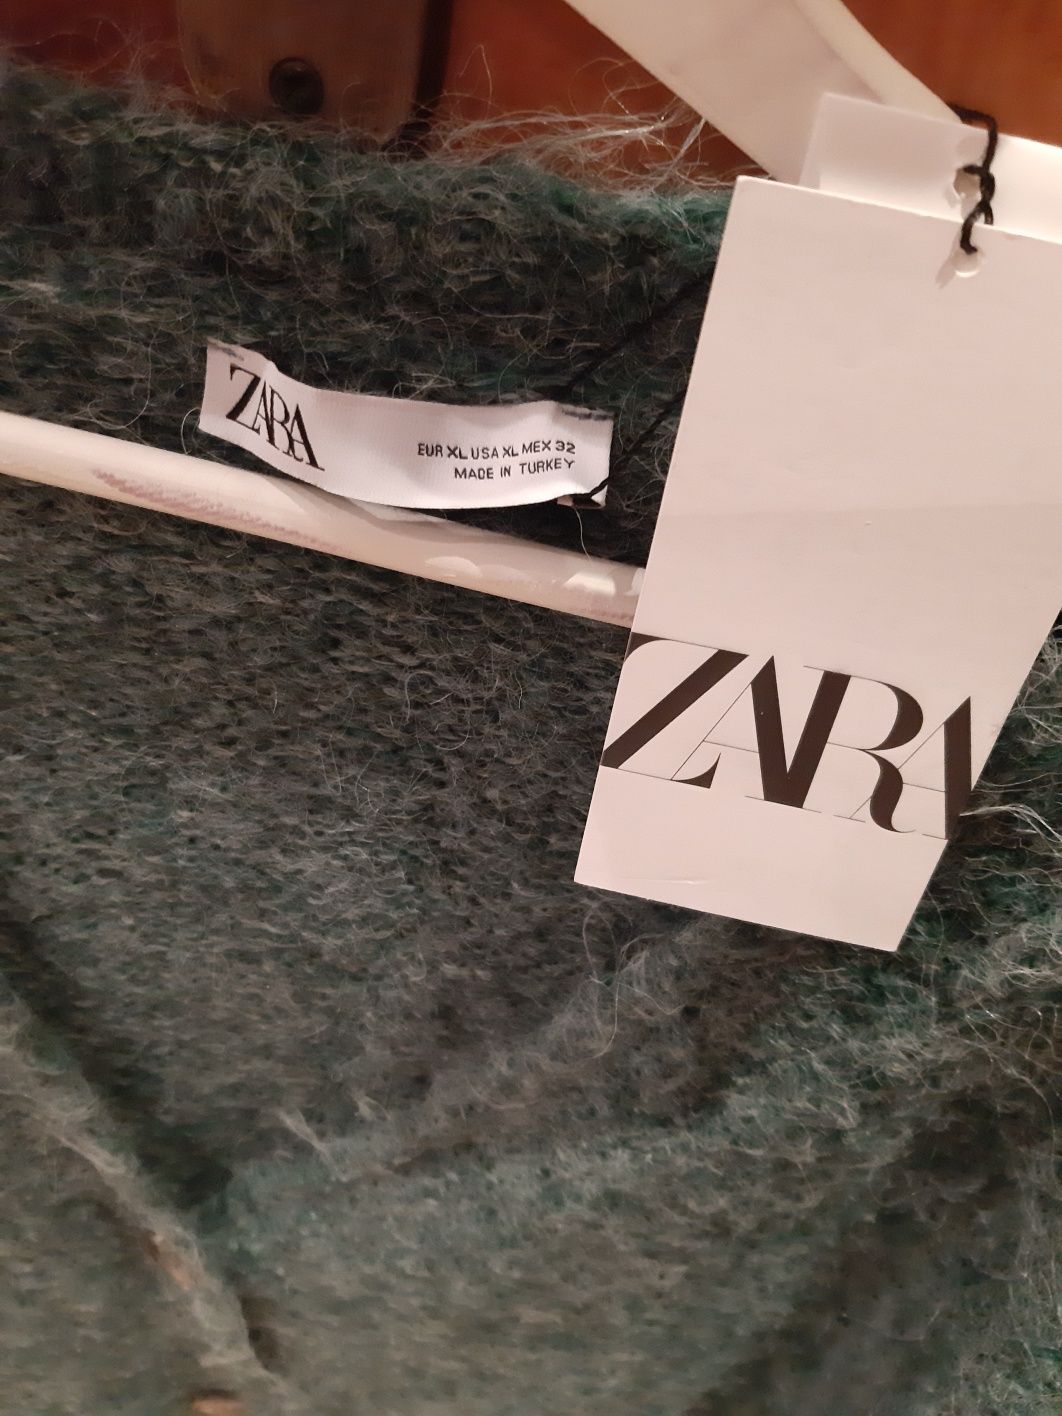 Sweterek zara XL zielono szary sweter damski tunika długi rozpinany tk